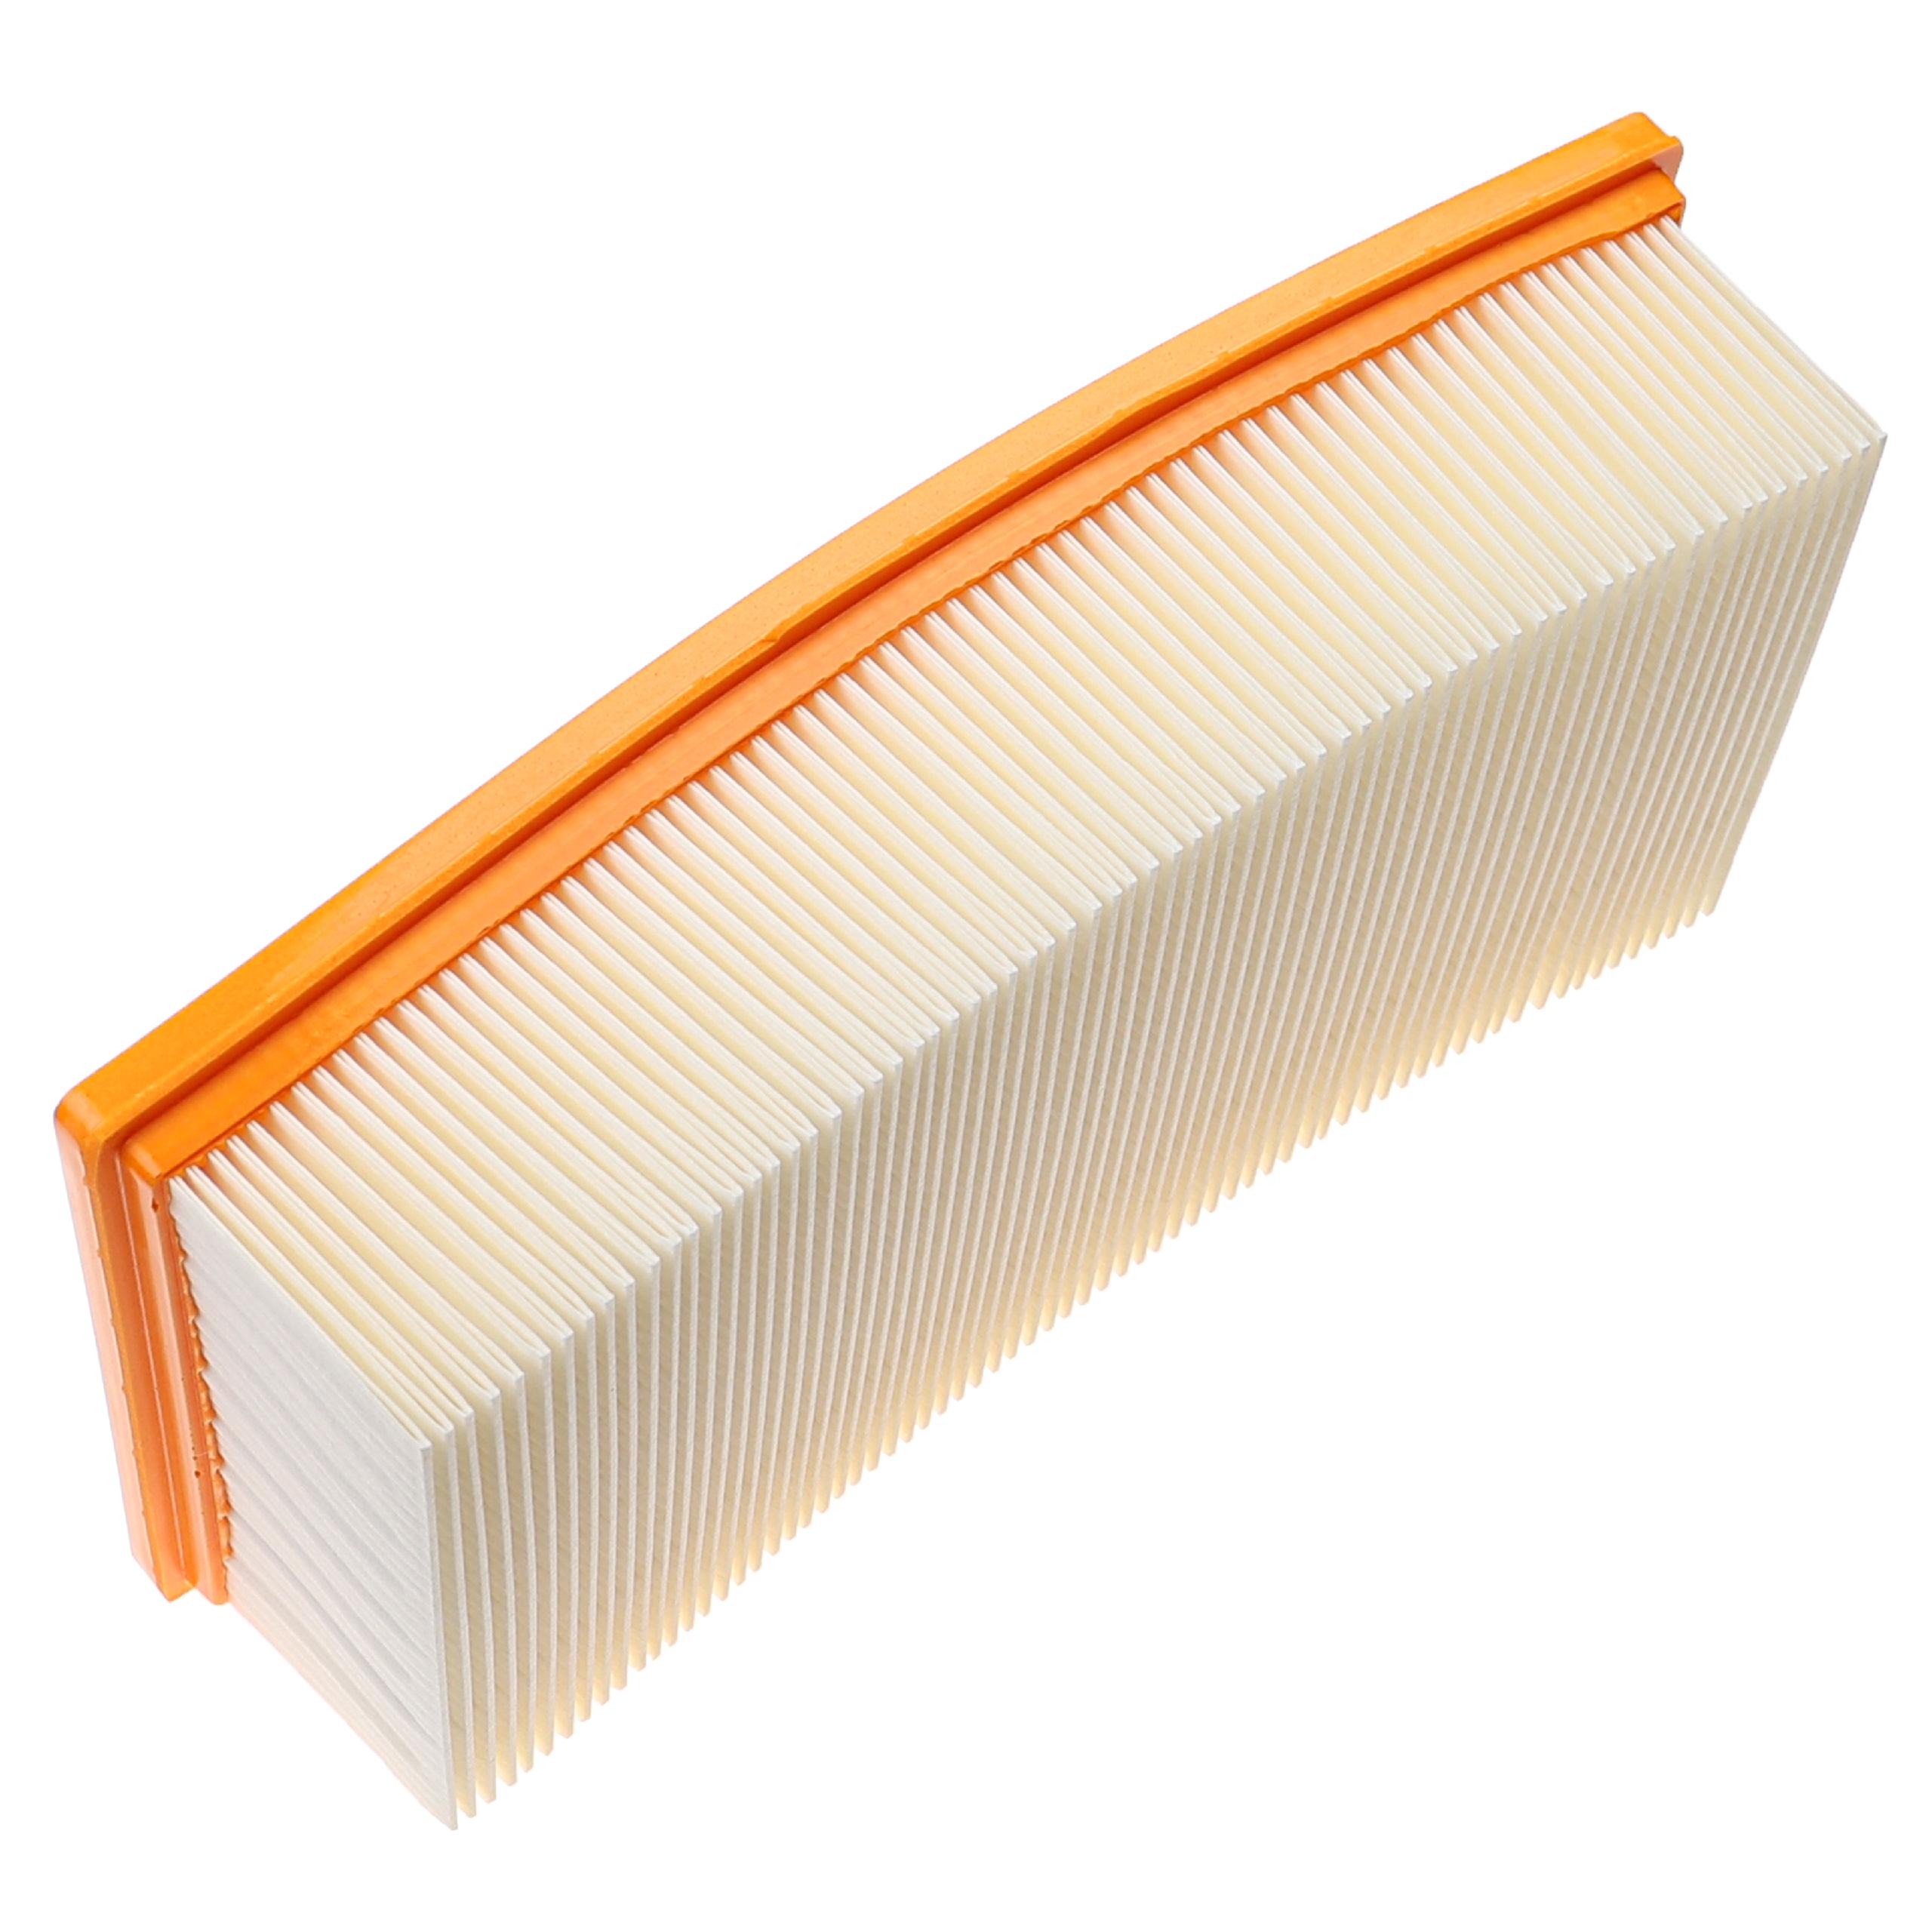 2x Filtre remplace Kärcher 6.904-284.0 pour aspirateur - filtre à plis plats